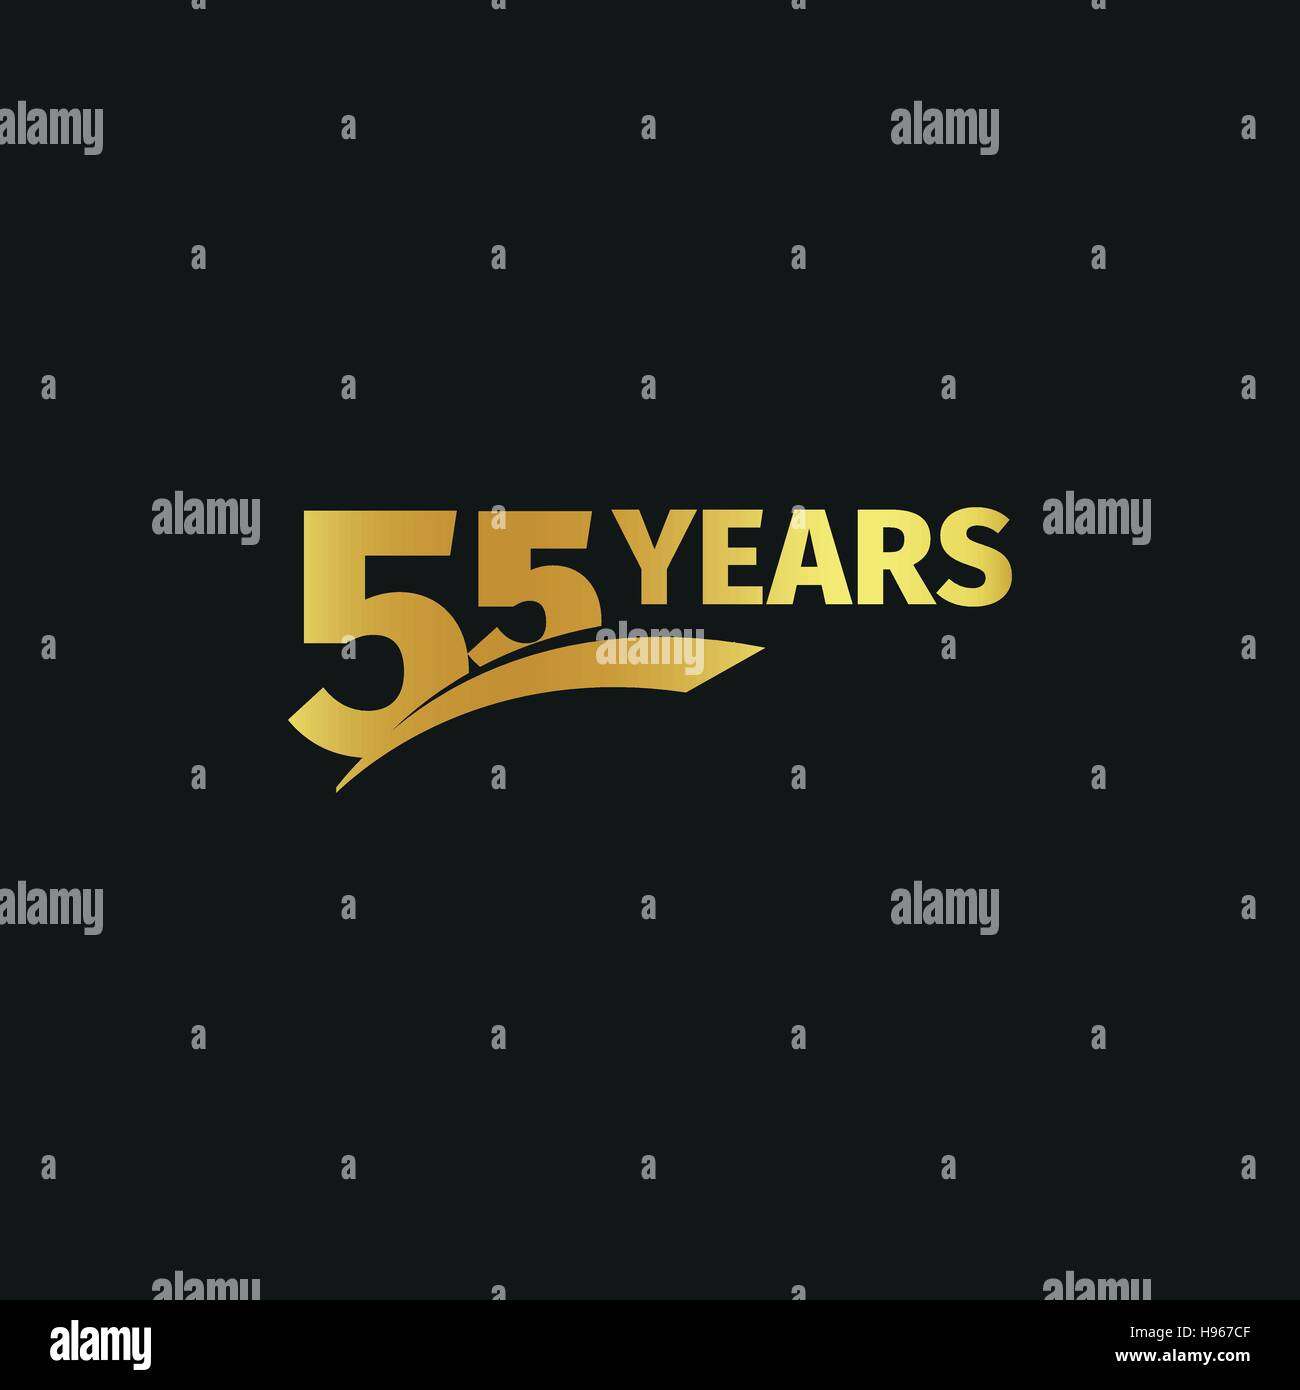 Abstract golden 55th Jahrestag Logo auf schwarzem Hintergrund isoliert. die Nummer 55 Schriftzug. Fünfundfünfzig Jahre Jubiläum Feier Symbol. Geburtstag-Emblem. Vektor-Illustration. Stock Vektor